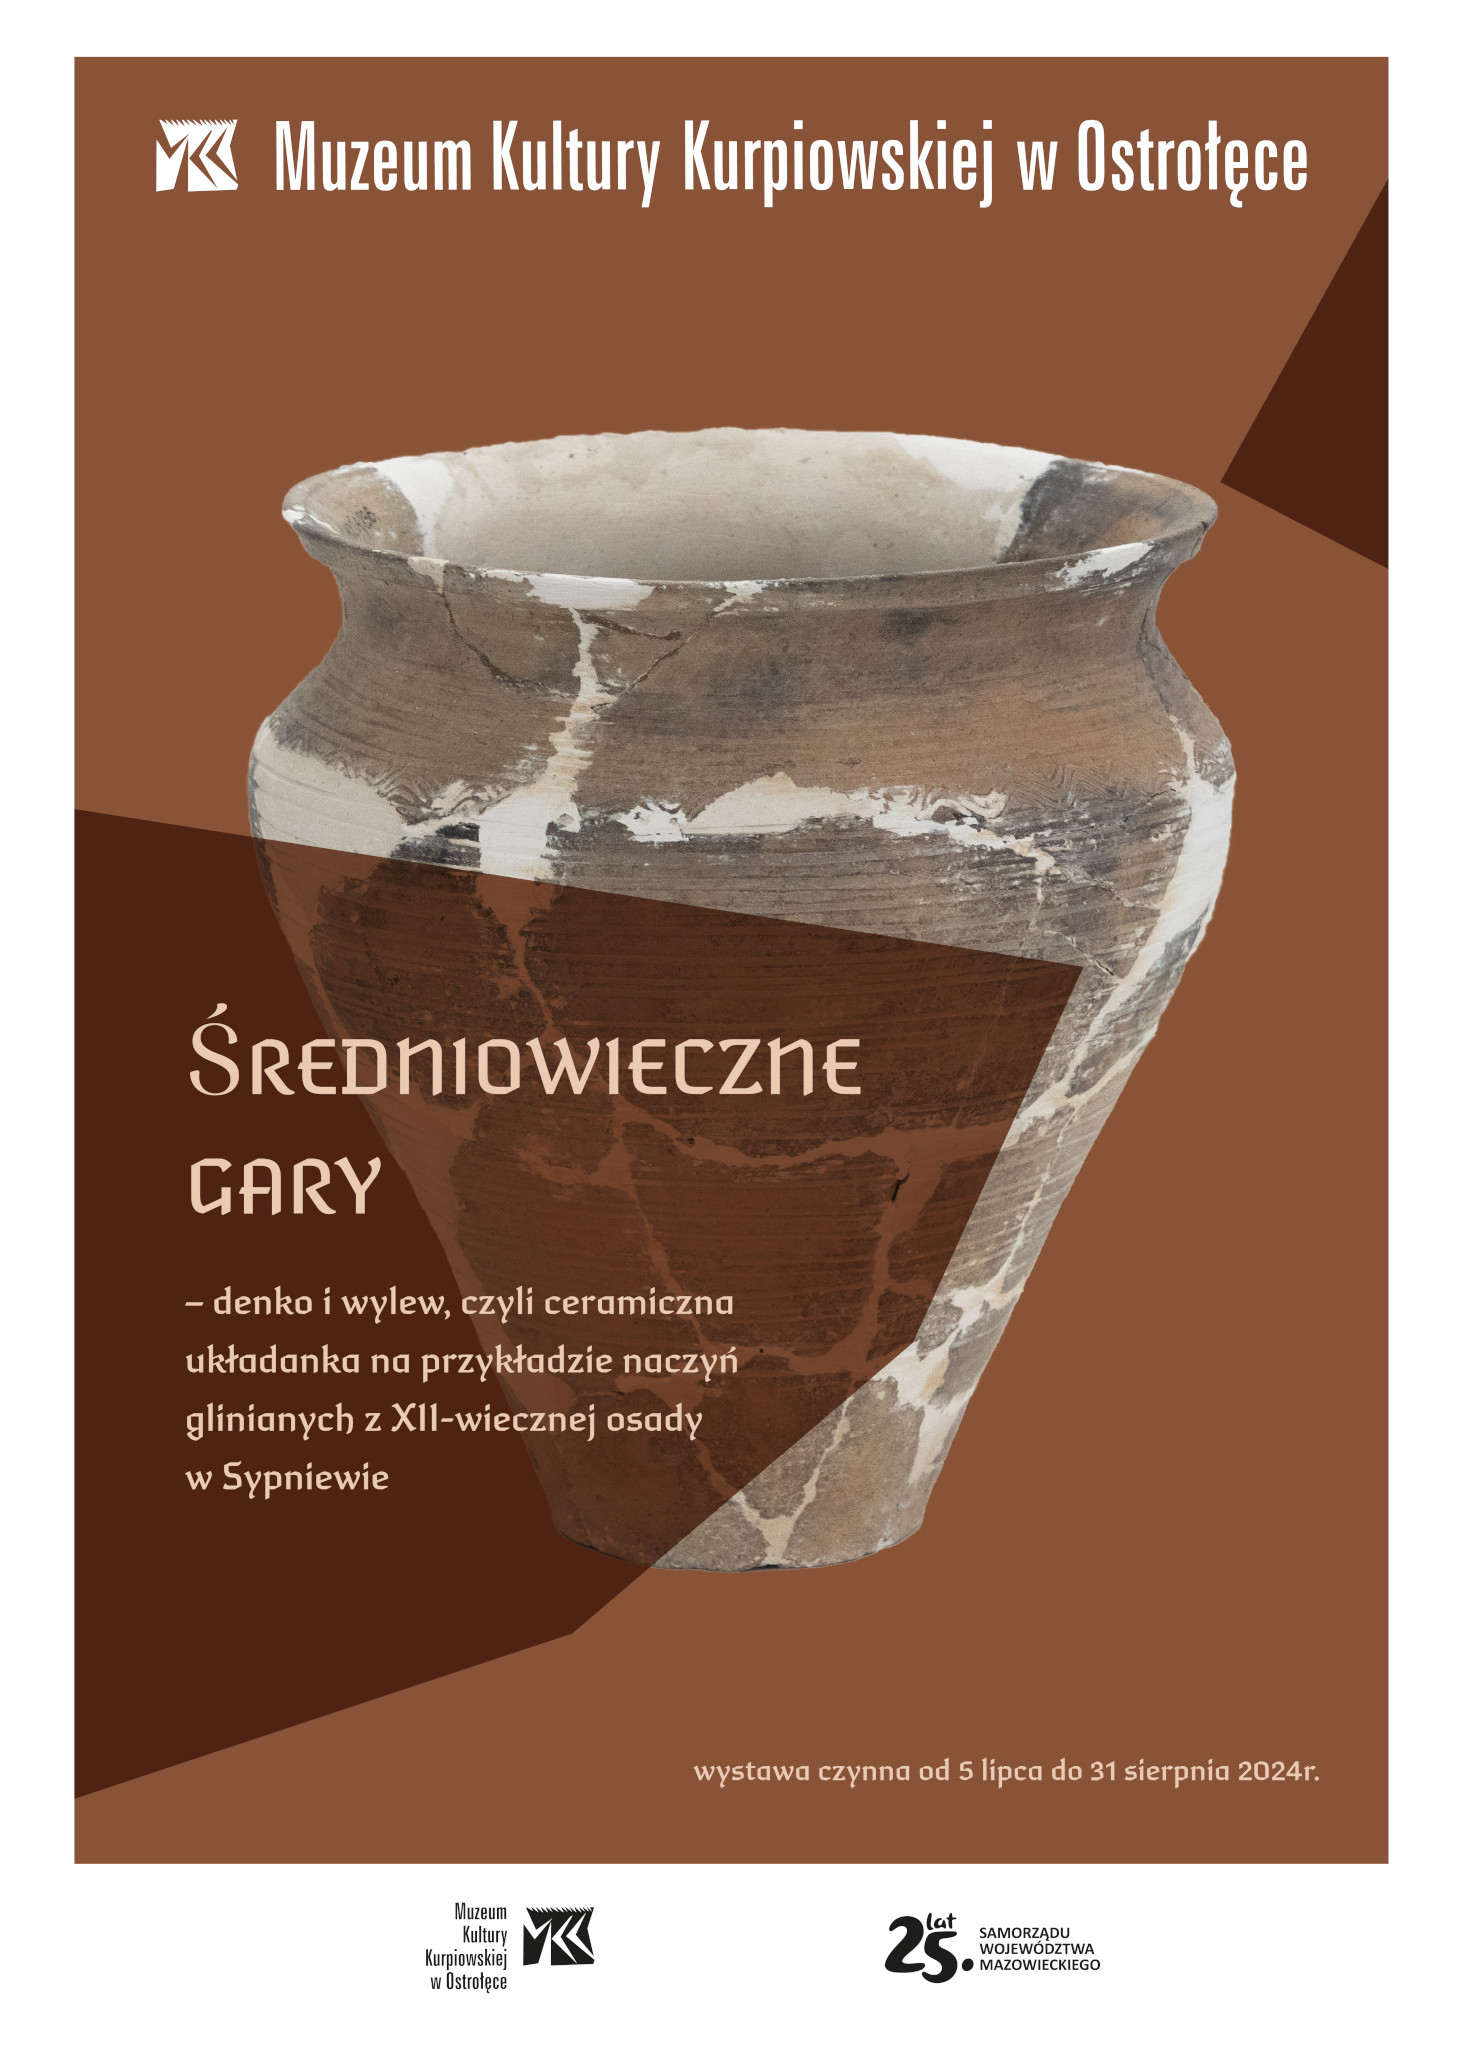 Średniowieczne gary – denko i wylew, czyli ceramiczna układanka na przykładzie naczyń glinianych z XII-wiecznej osady w Sypniewie